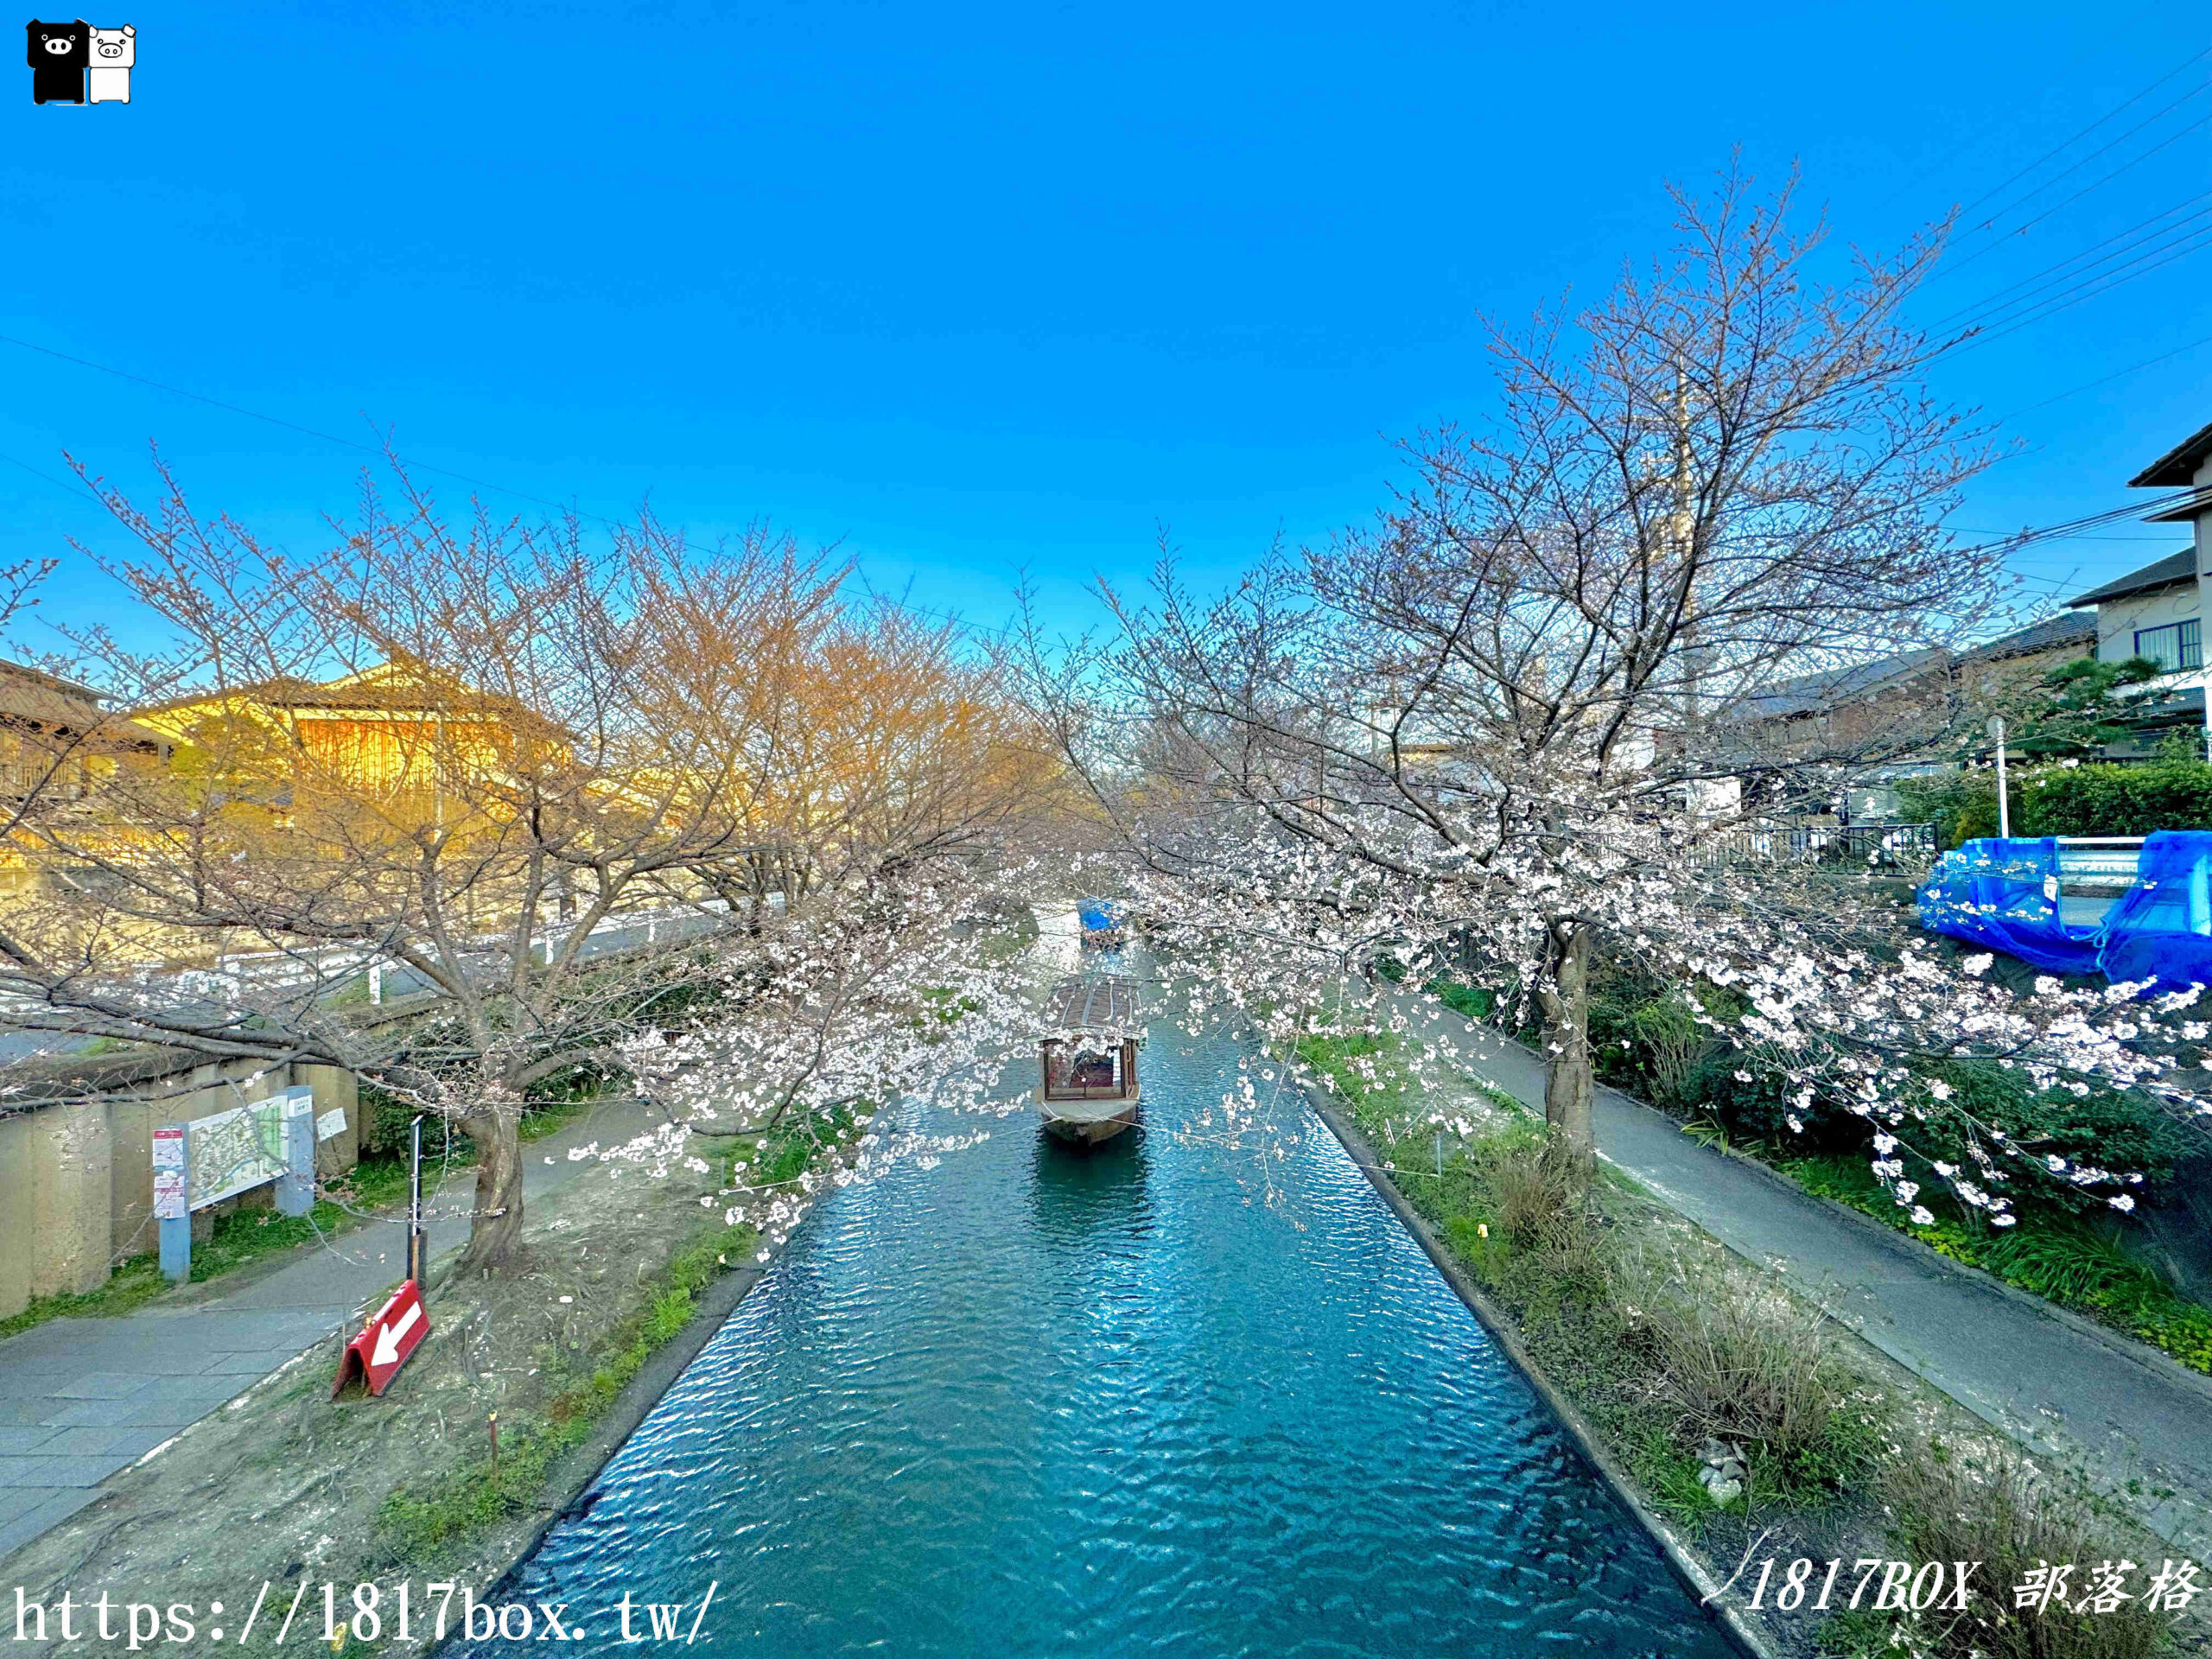 【京都景點】伏見十石舟。欣賞日本酒鄉的風景。京都郊區賞櫻秘境